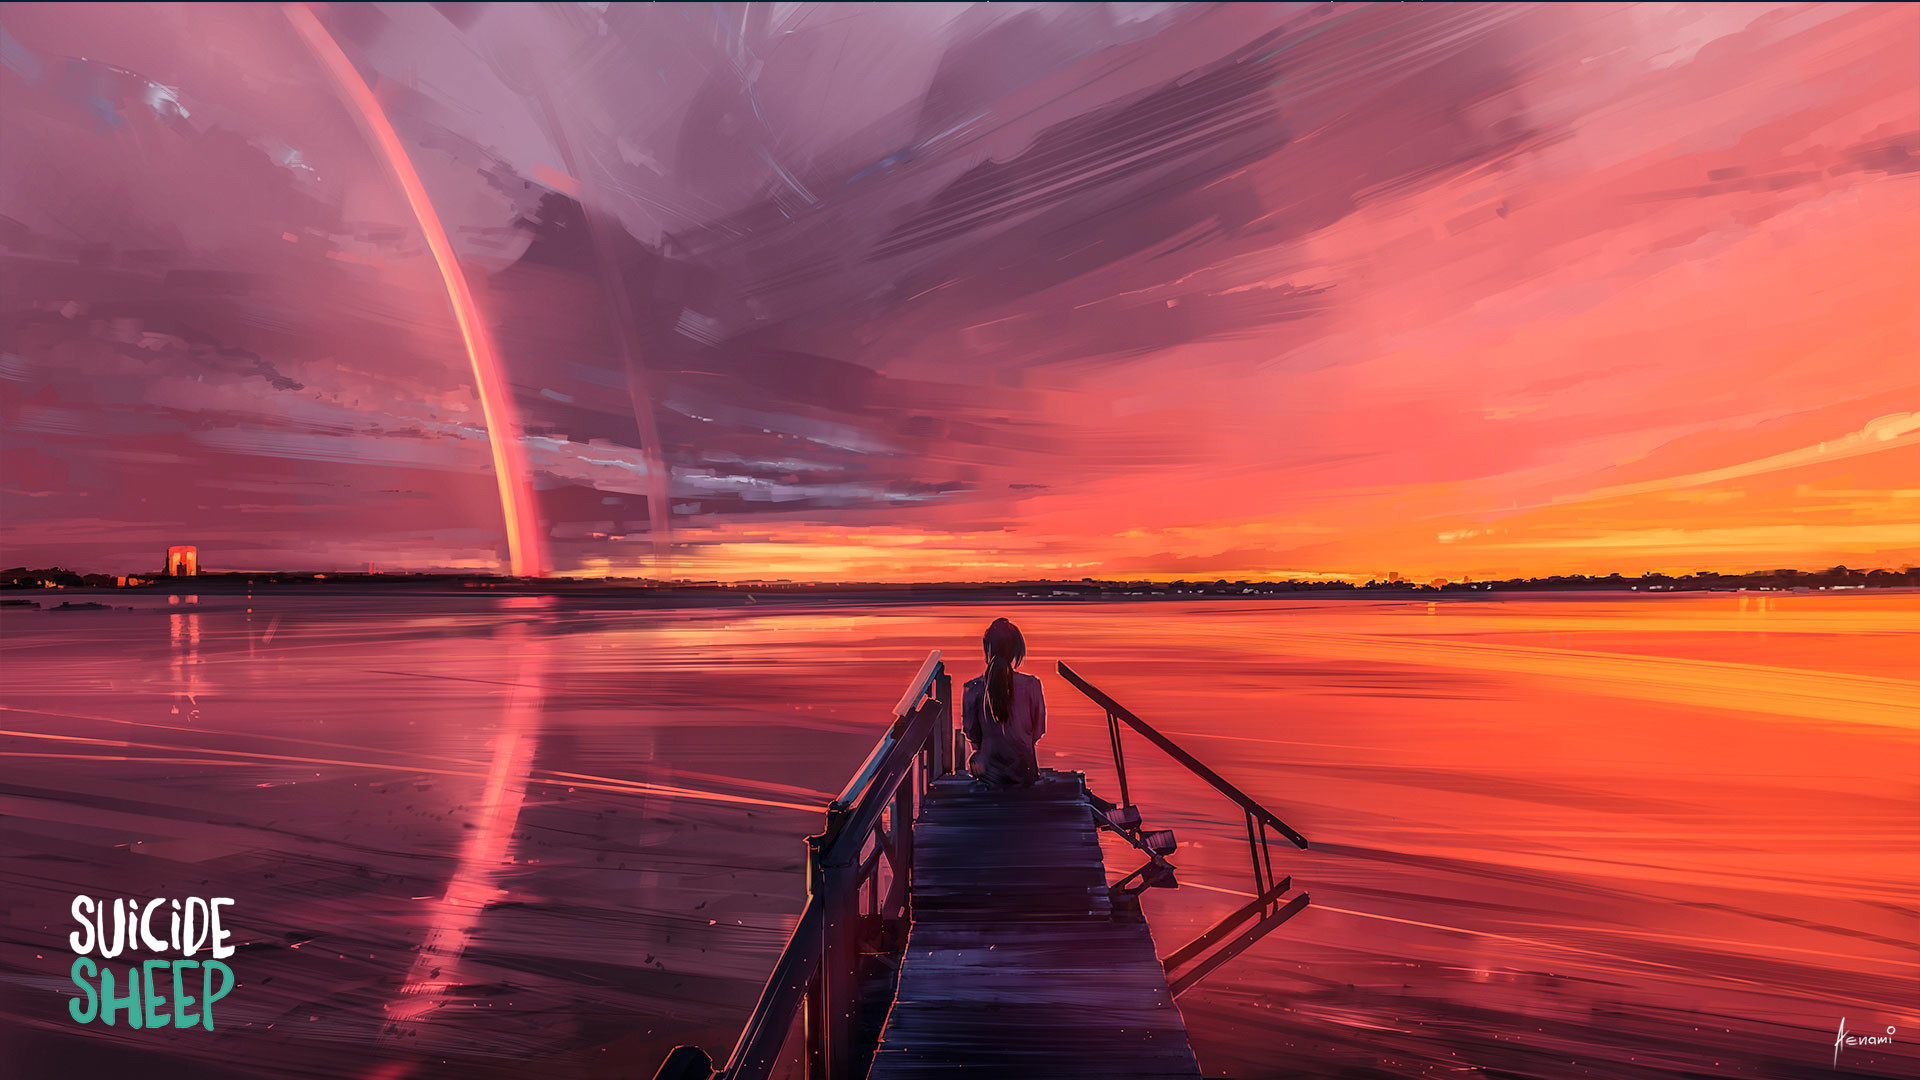 Digital Art Artwork Aenami Sunset Landscape Sea Sky Suicide Sheep Pier 1920x1080